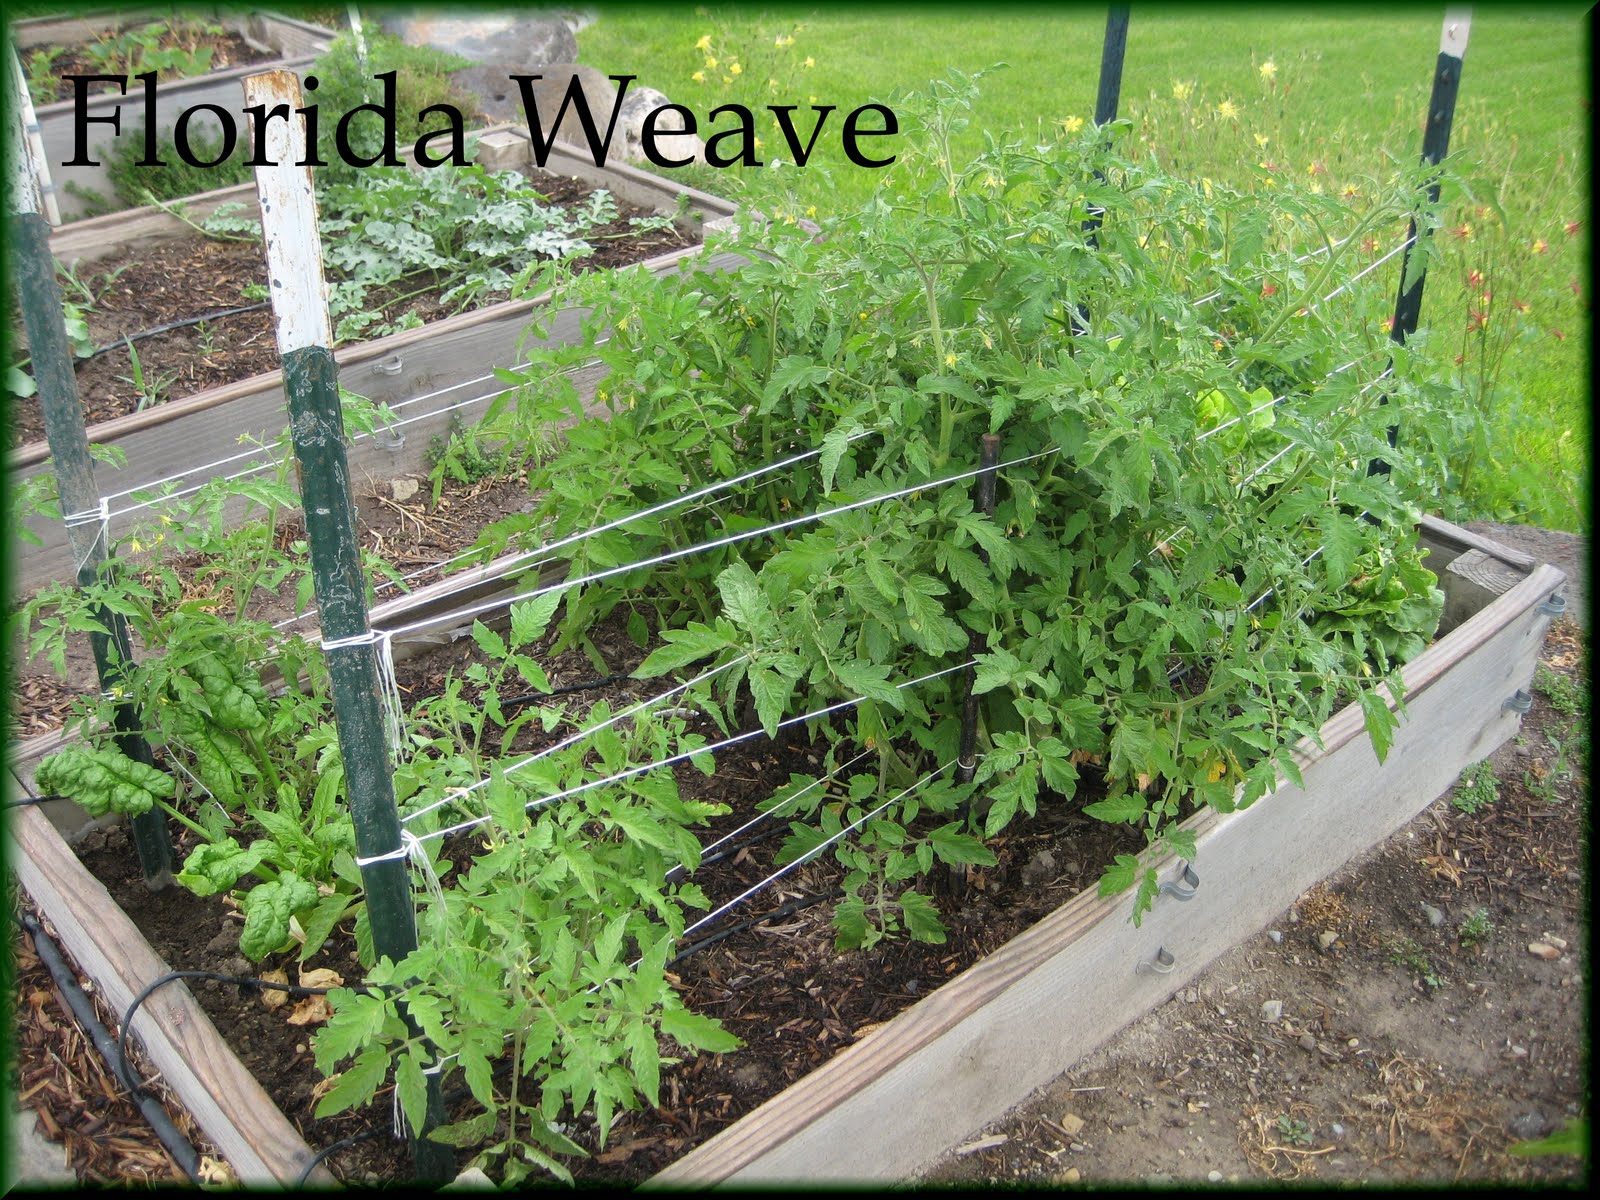 Enjoyingtheharvest Staking Tomatoes Florida Weave